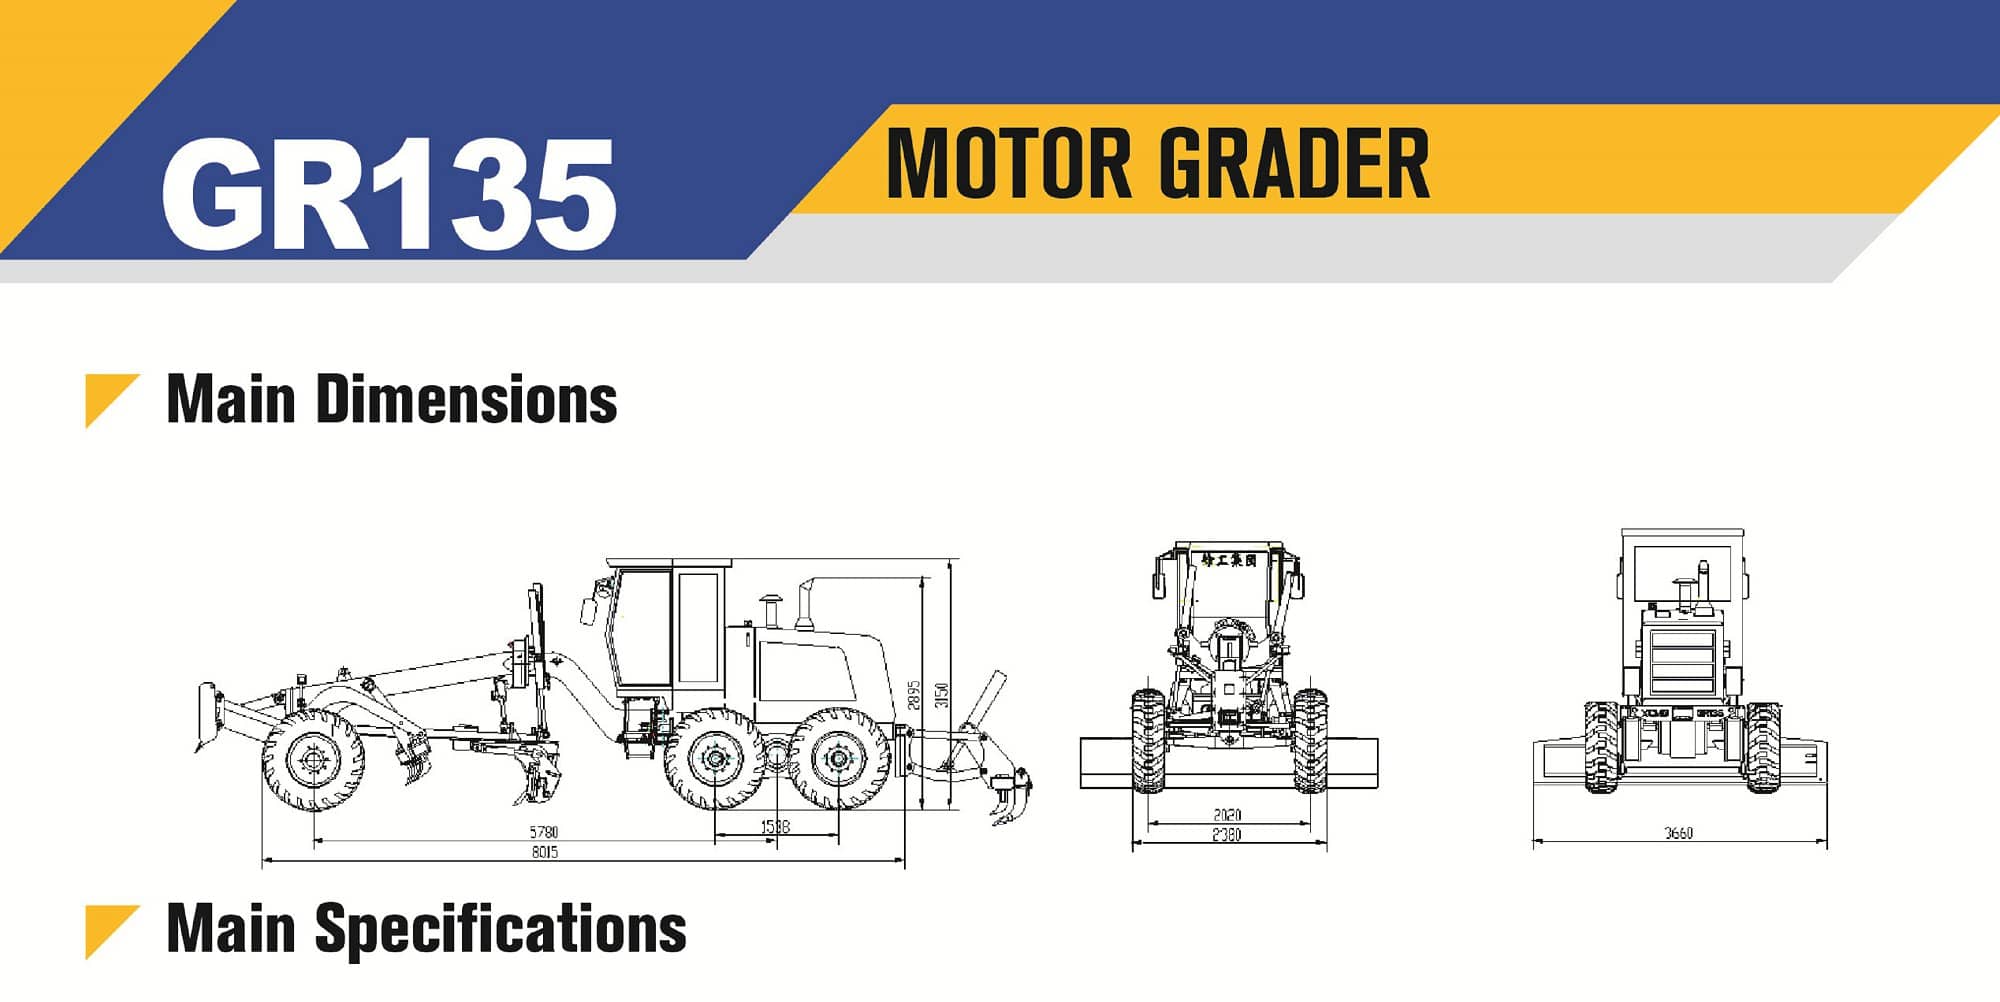 XCMG Official Motor Grader GR135 For Sale